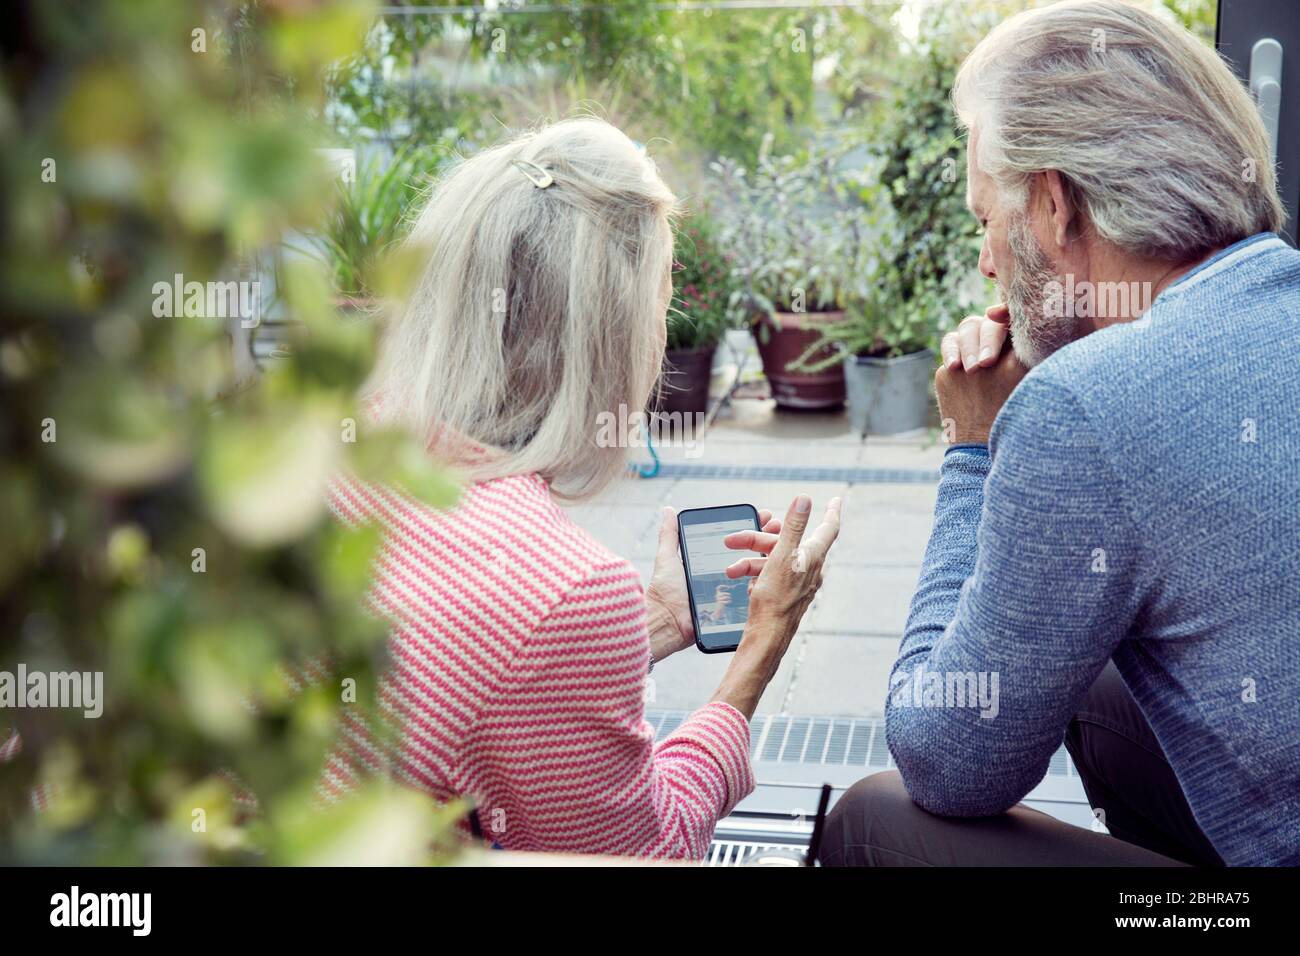 Vue arrière d'un couple assis dans un jardin et regardant un téléphone portable. Banque D'Images